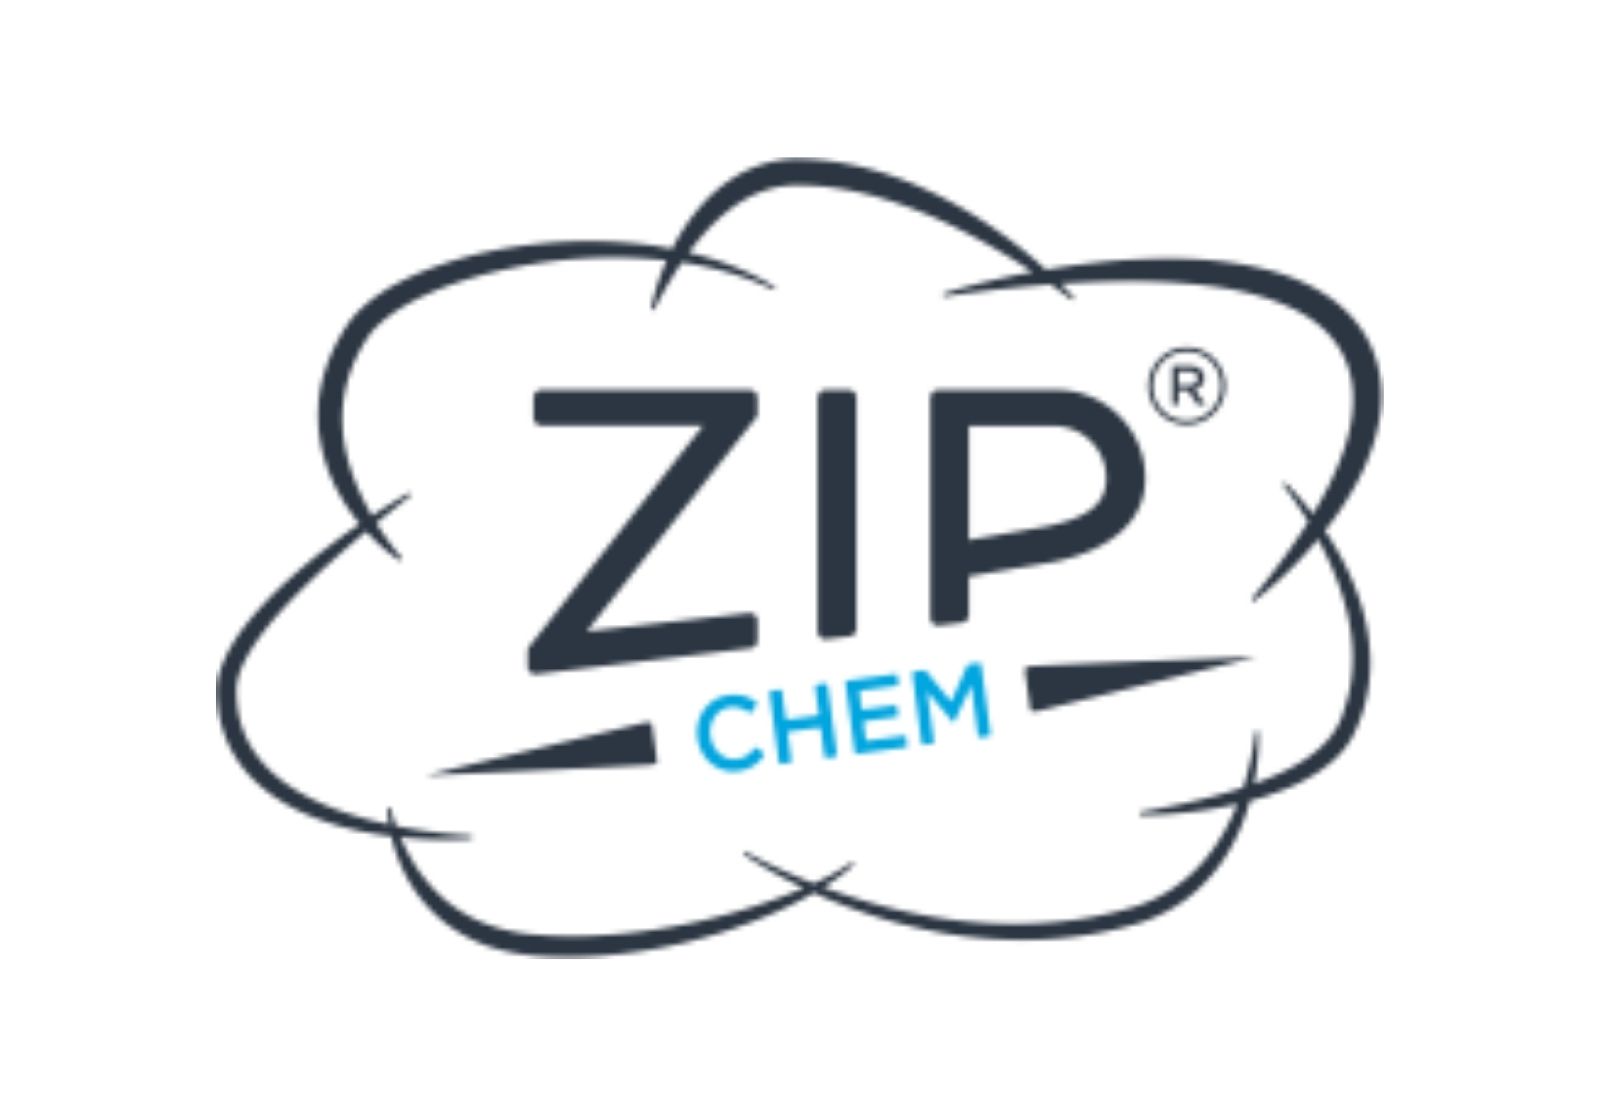 Zip-Chem